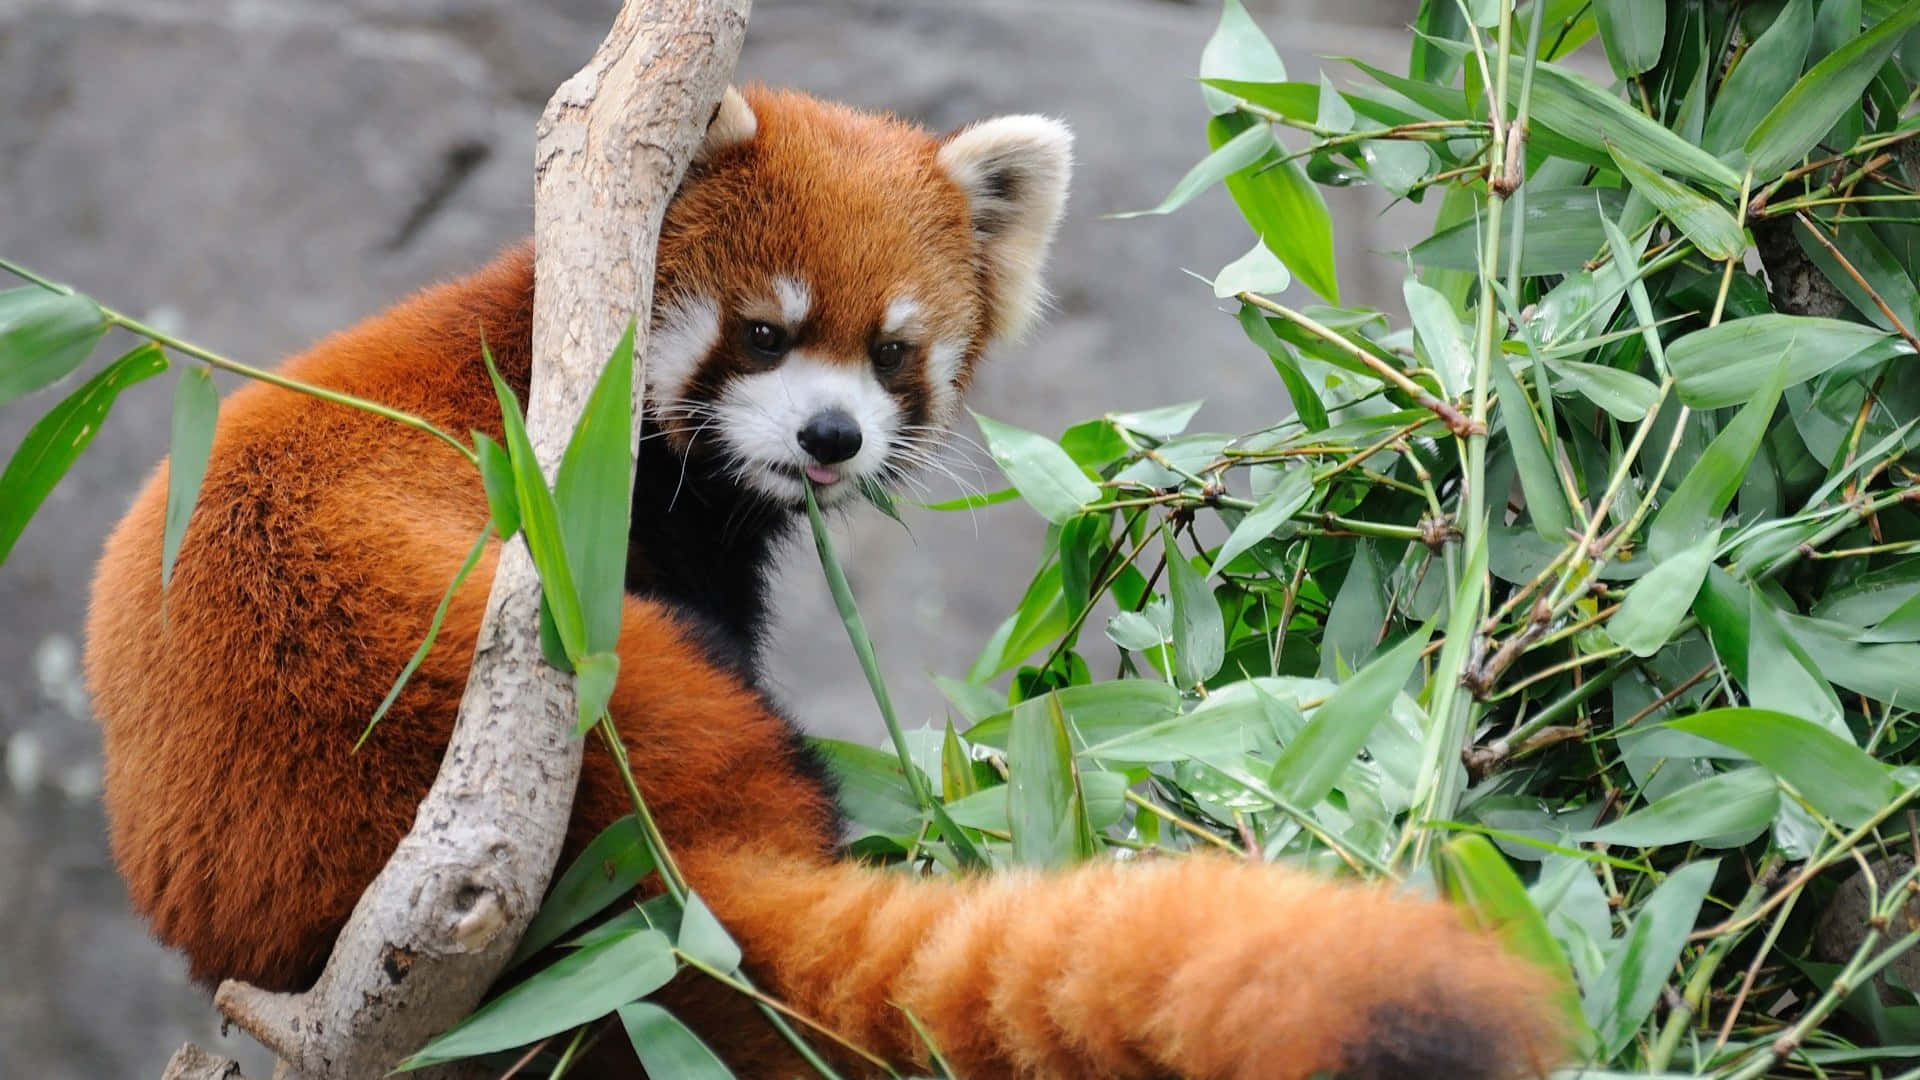 Untenero E Coccoloso Panda Rosso In Attesa Di Essere Accarezzato. Sfondo